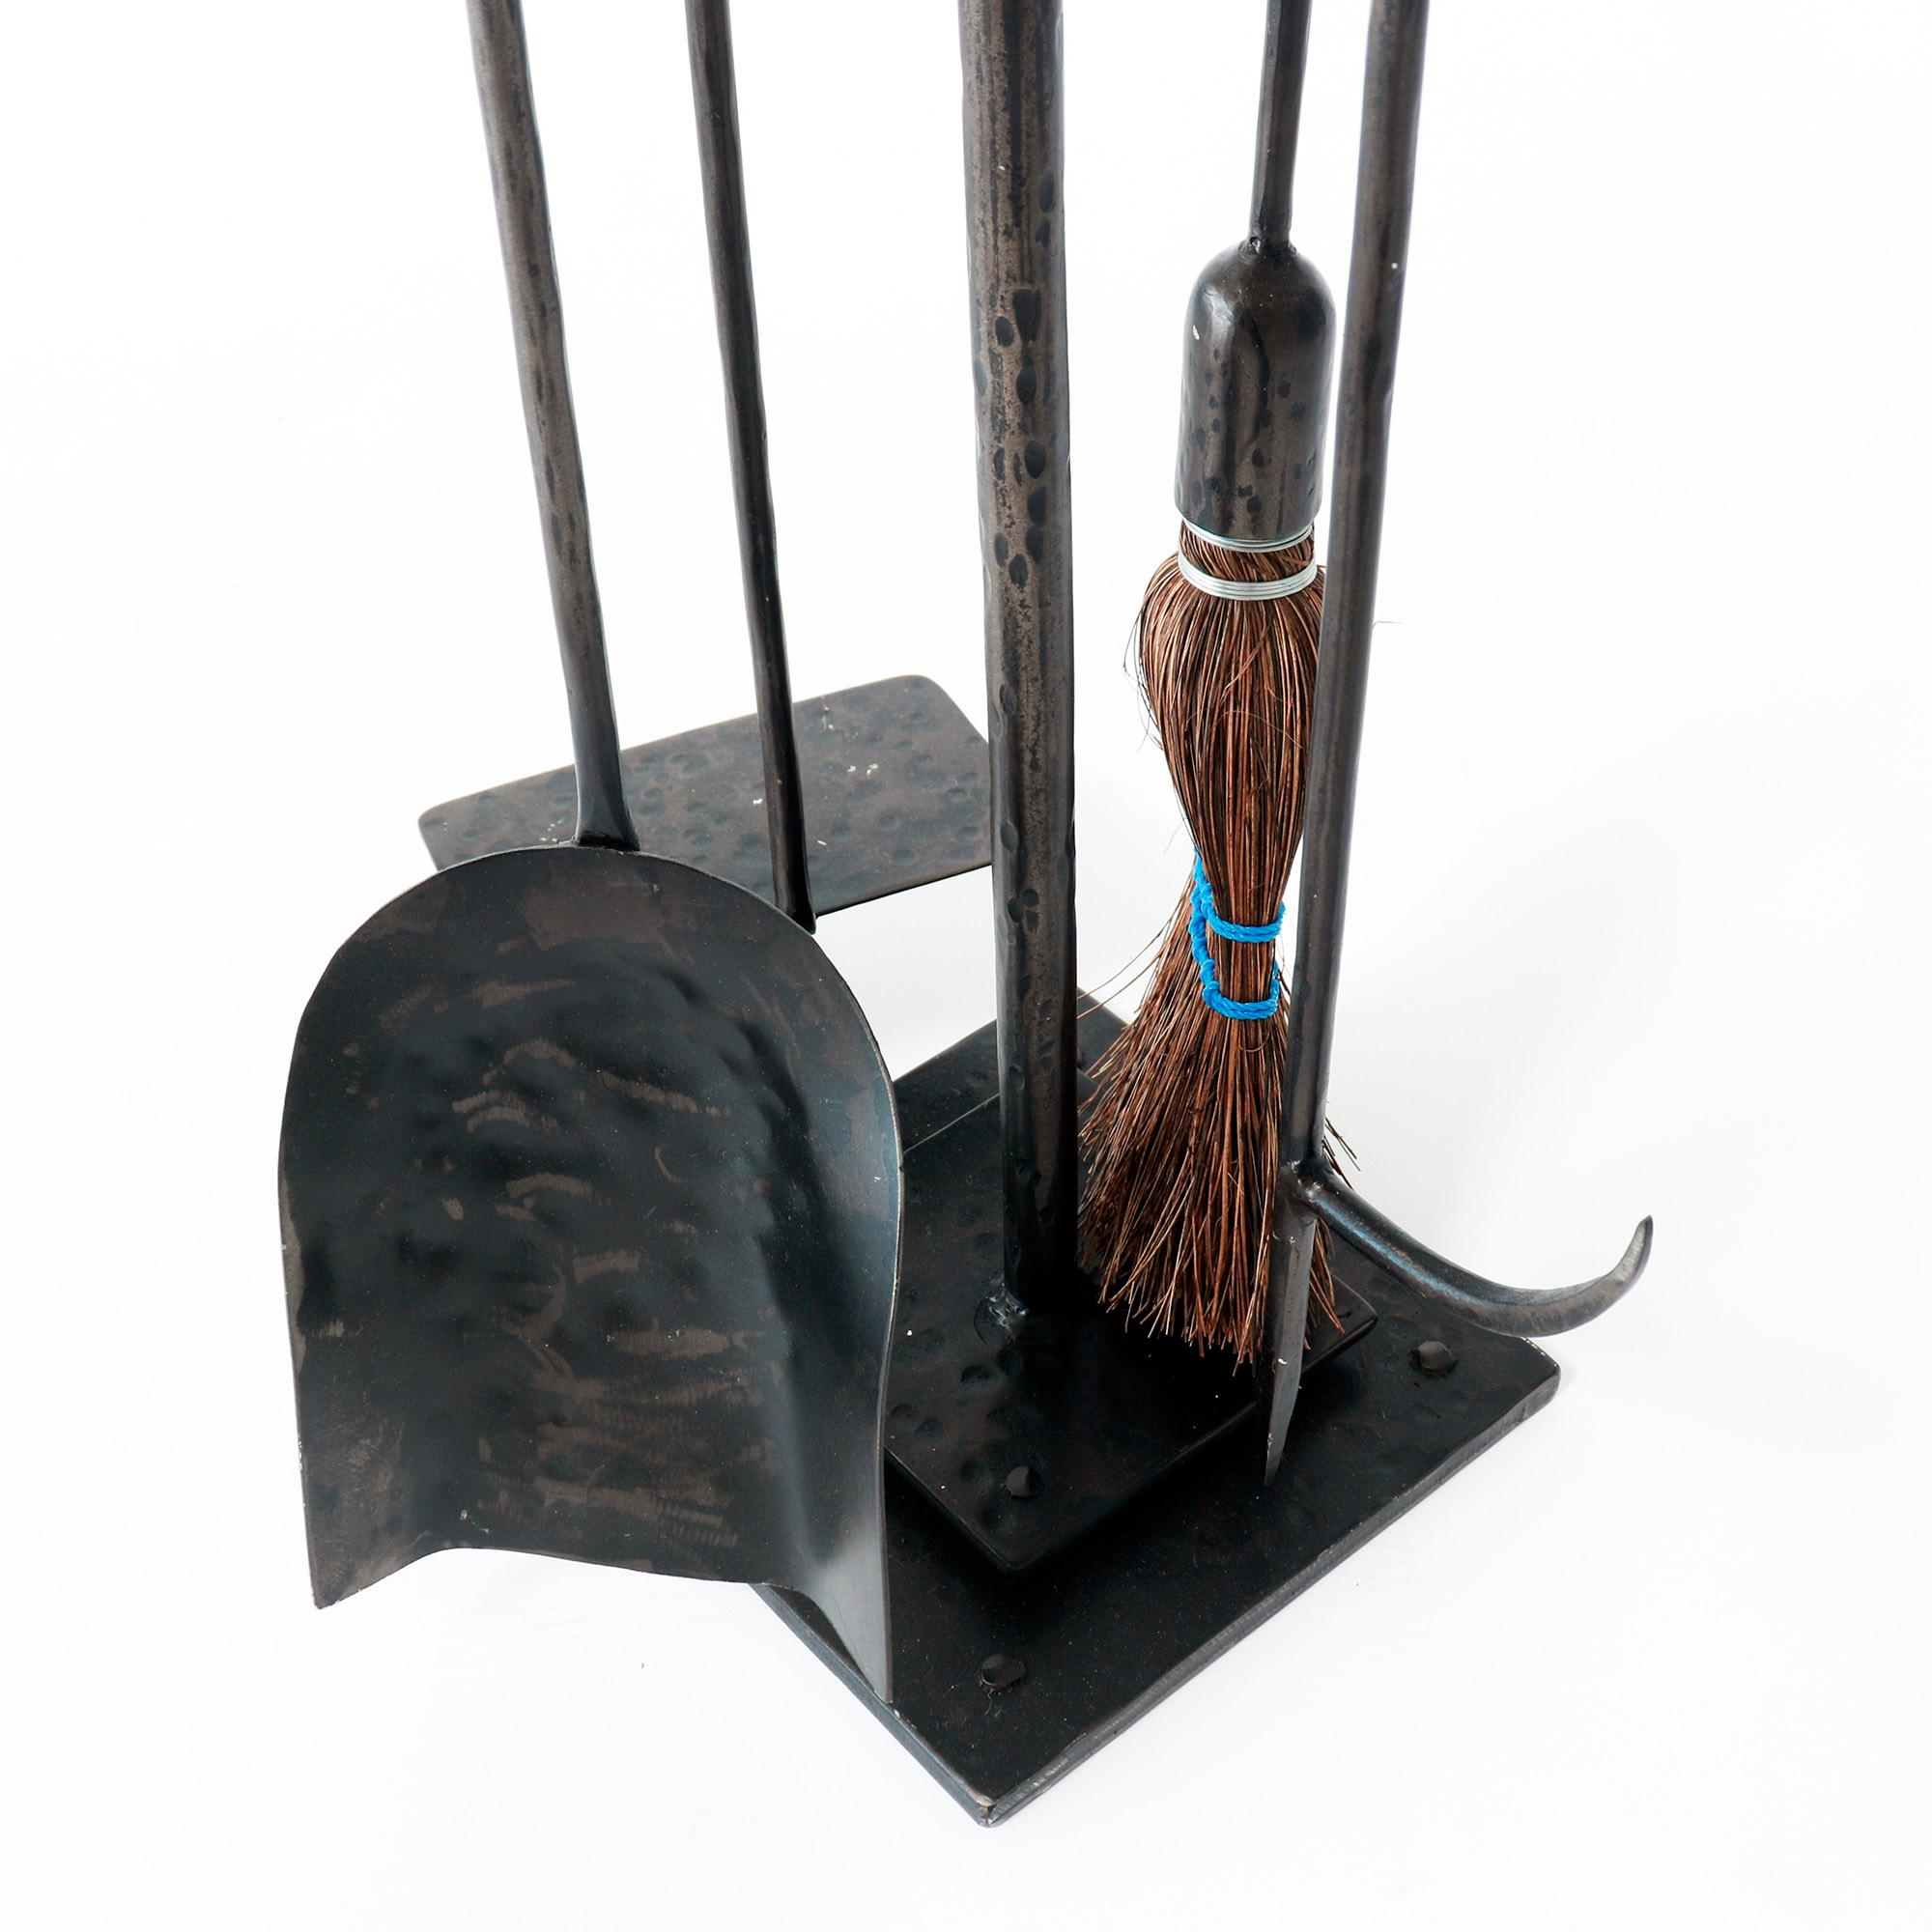 Cet ensemble d'outils de cheminée en fer forgé à la main comprend un tisonnier, une brosse, une pelle et un tire-bûche. La tour en métal noirci ajoute une touche de classe à votre cheminée. 

Ajoutez du style et de la fonctionnalité à votre cheminée